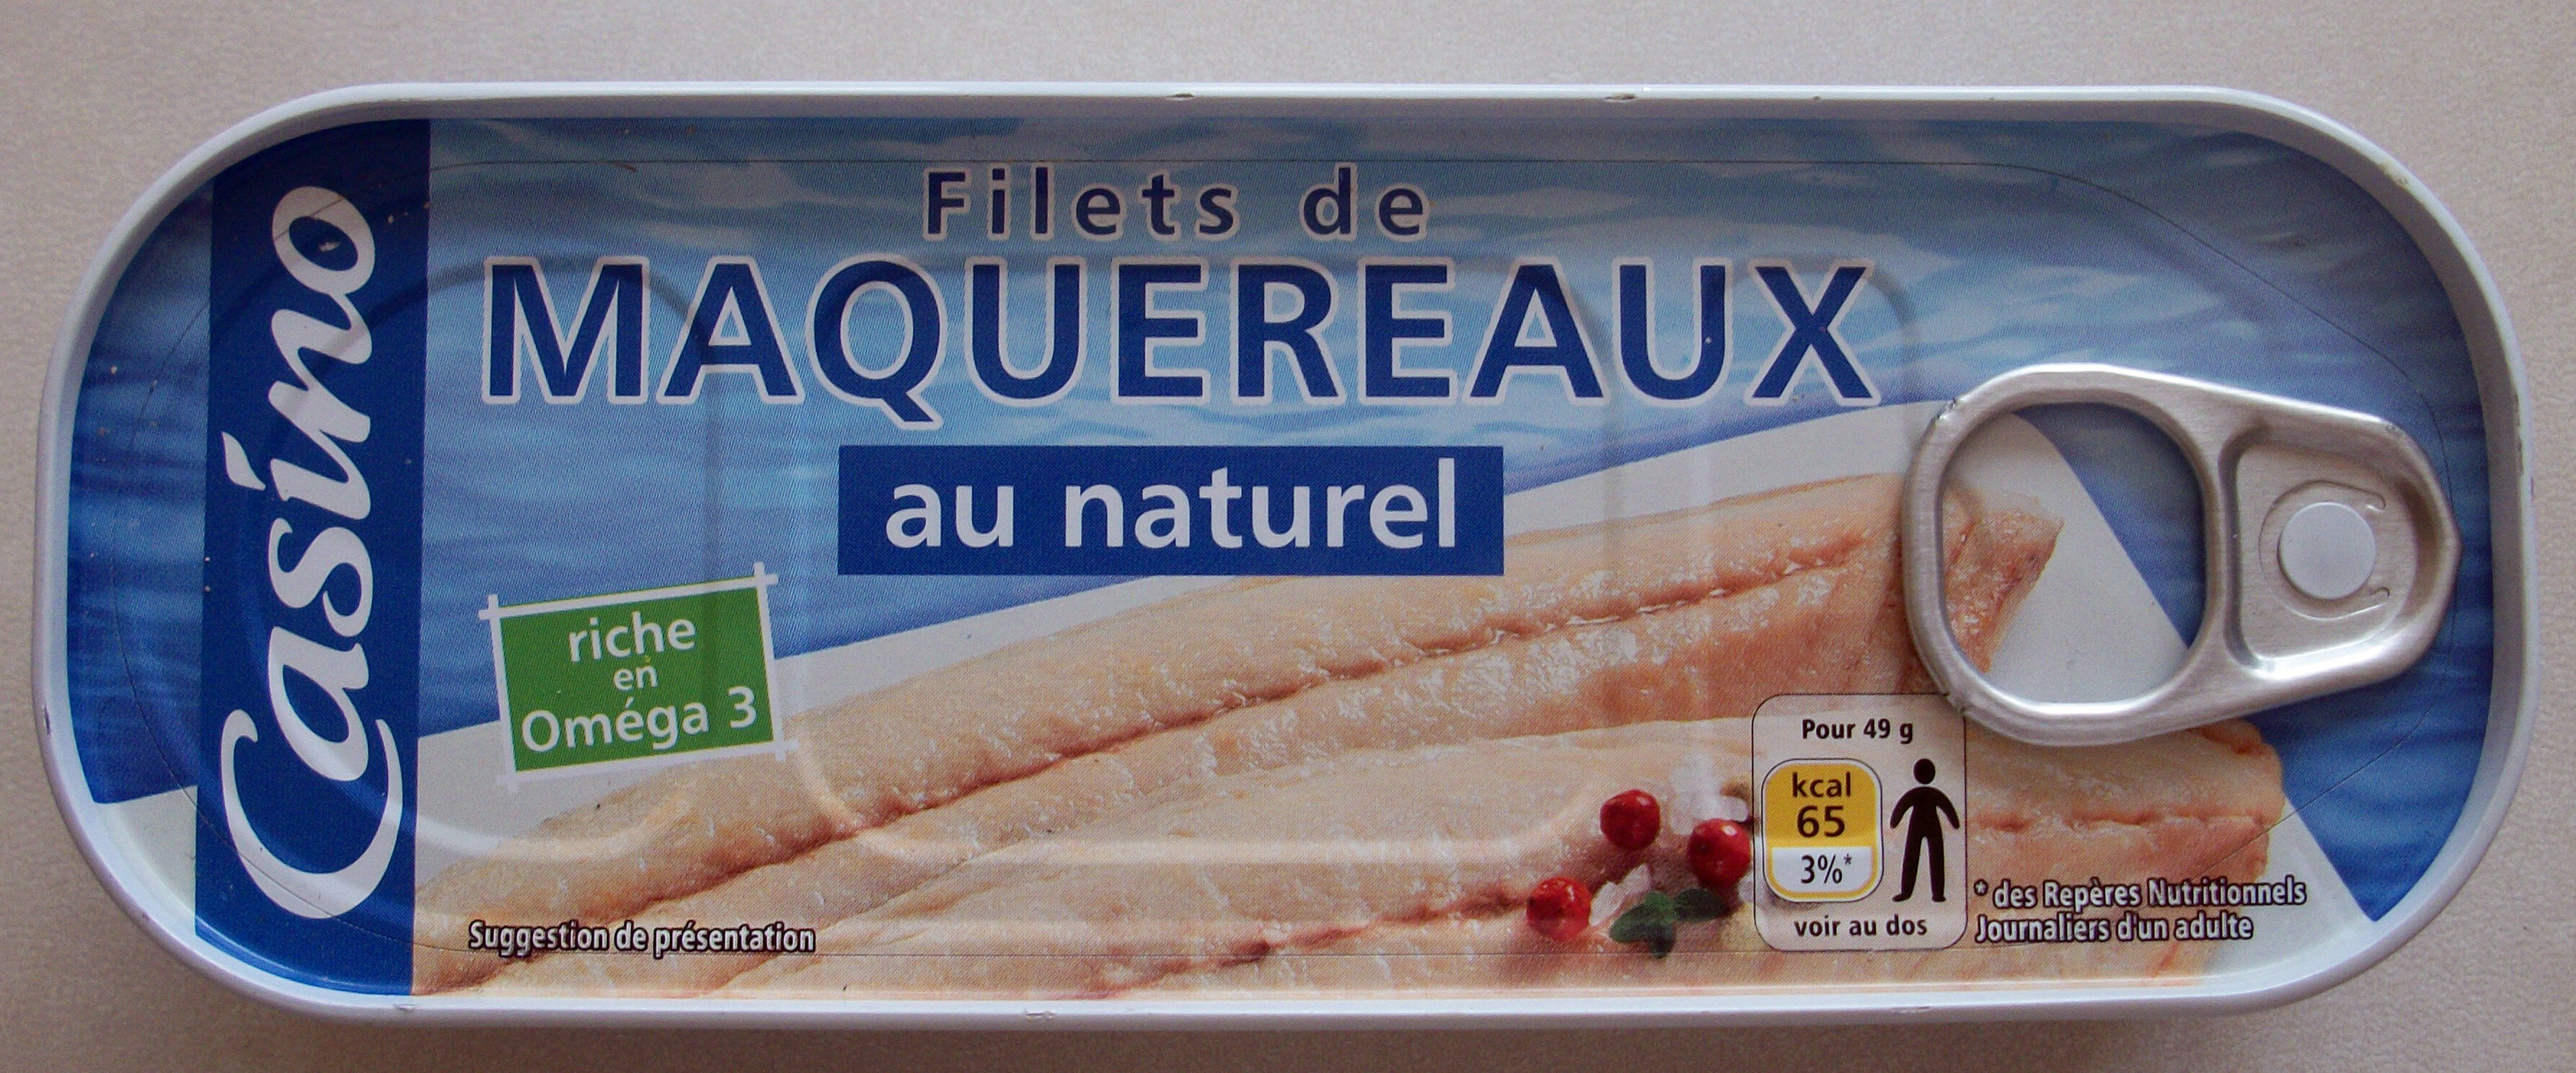 Filets de maquereaux au naturel - Product - fr